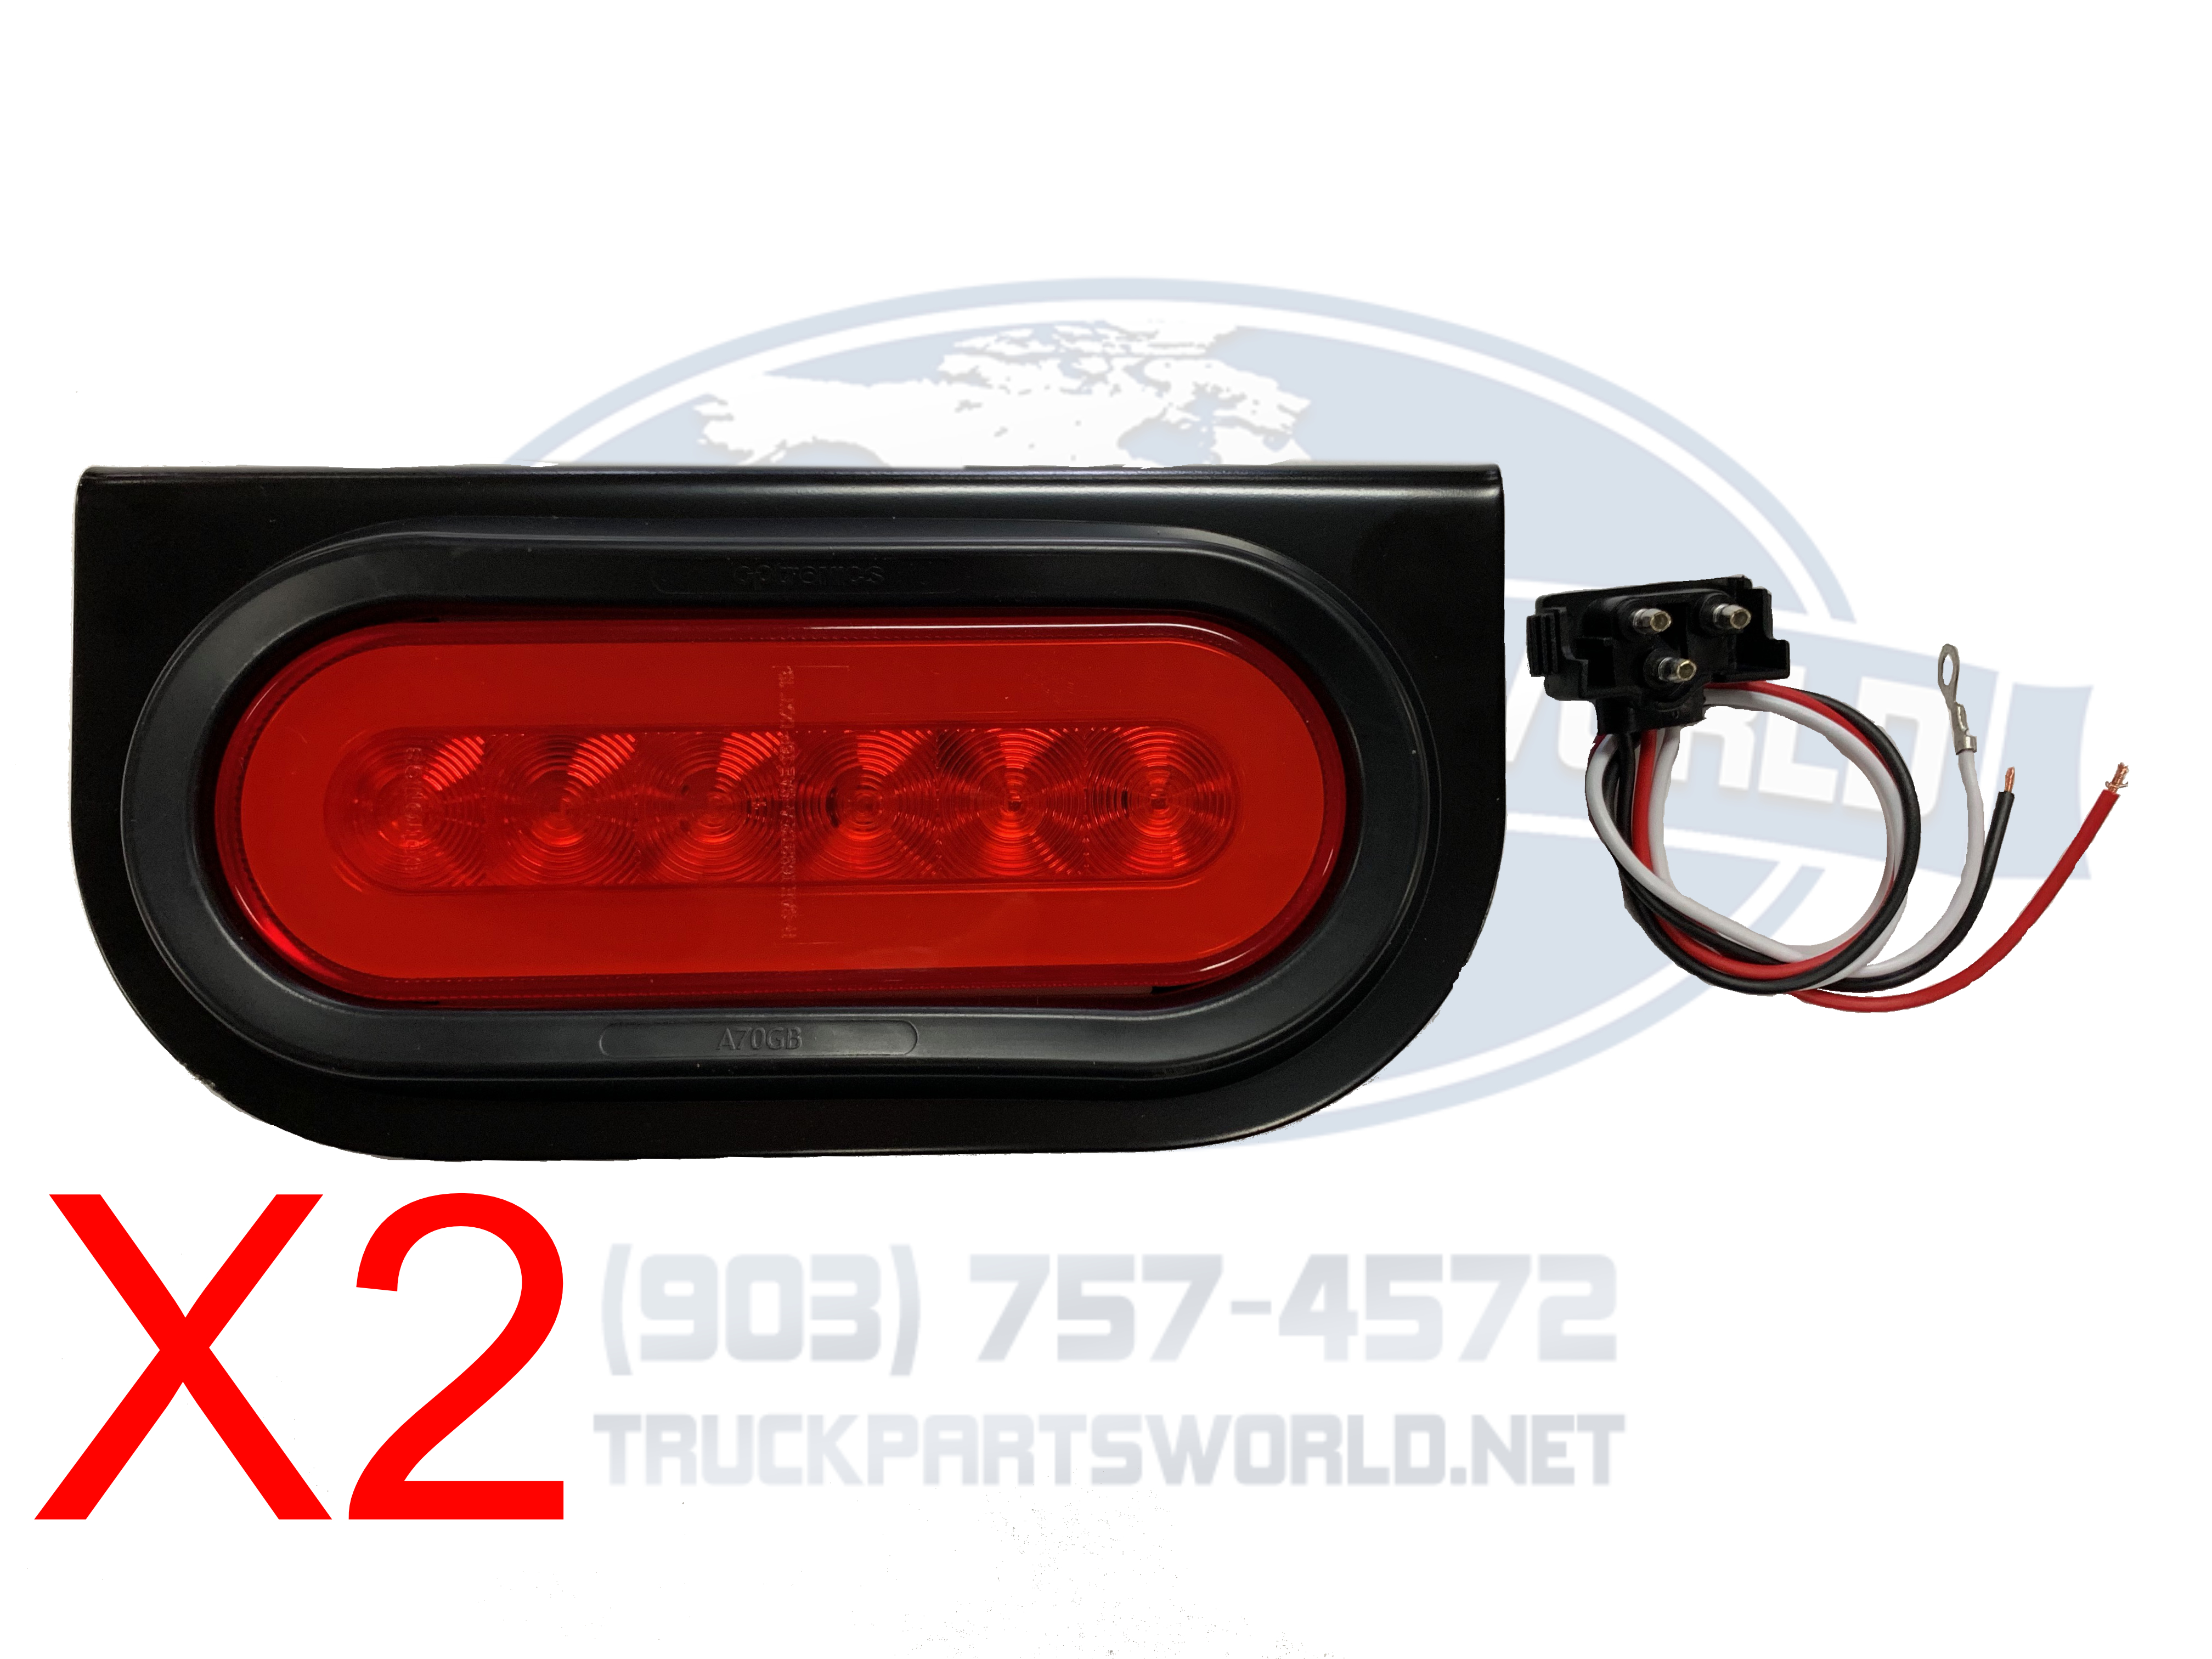 1042517 Street fx 1042517 oval light kit black w/red led 